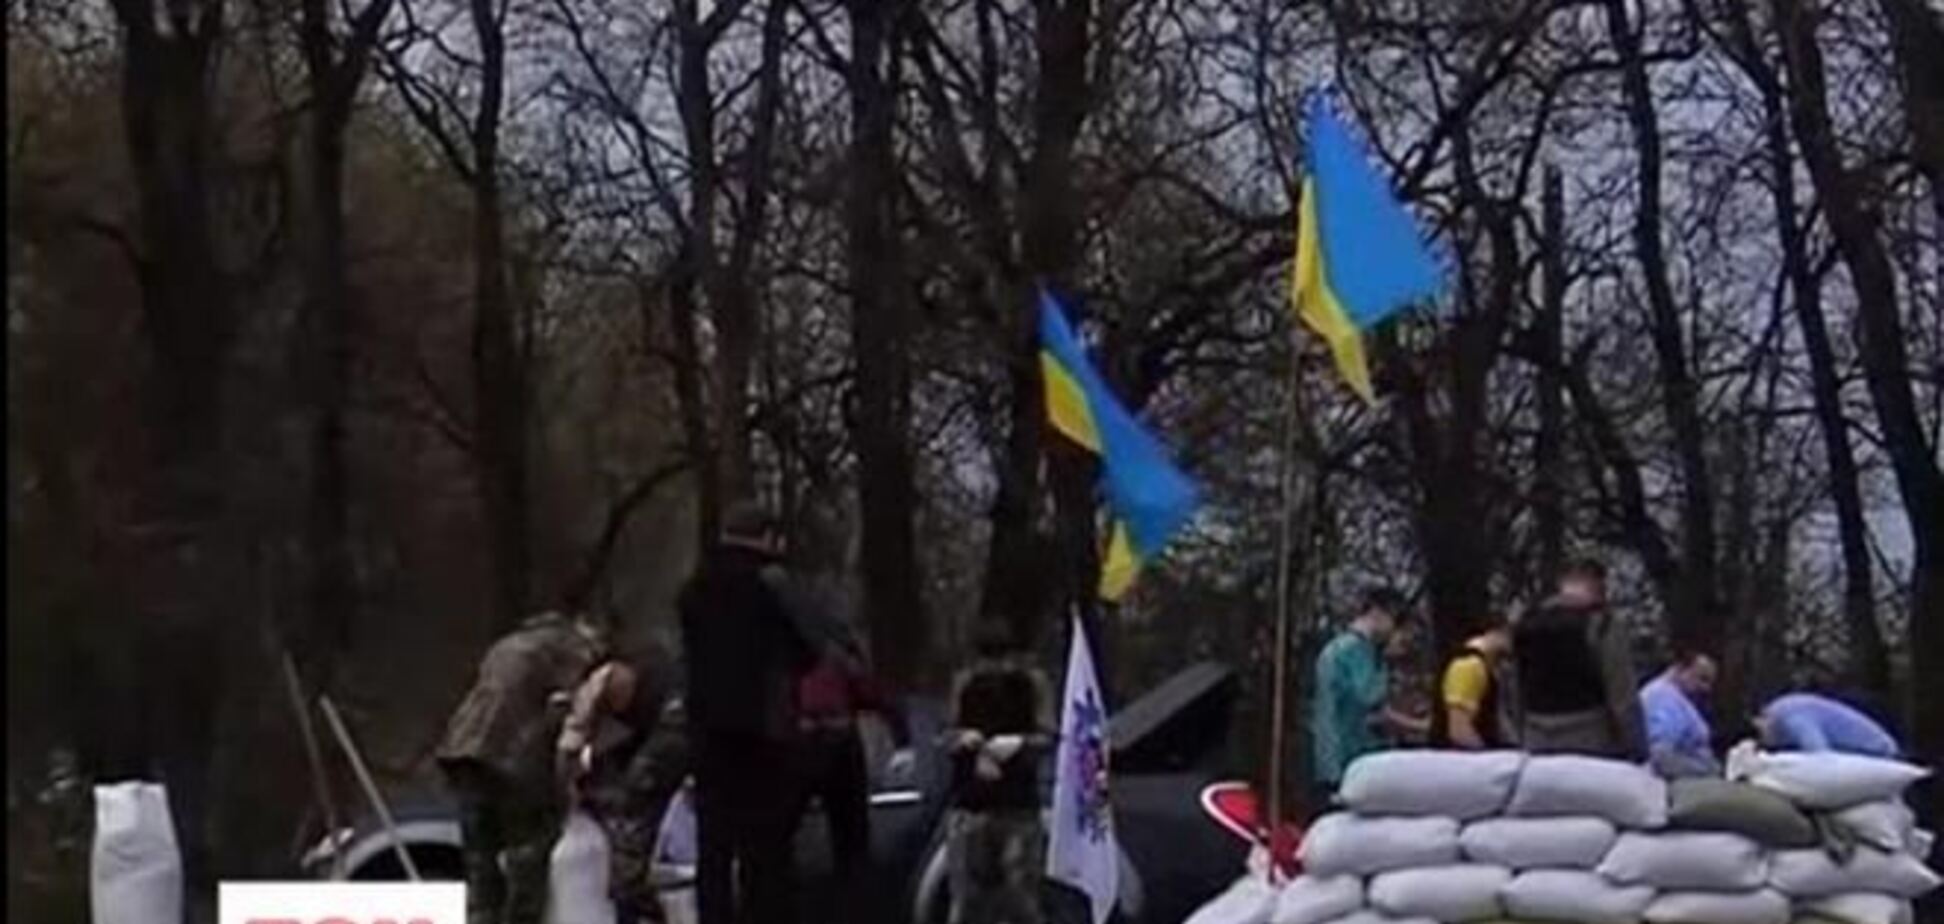 На въездах в Запорожье появились блокпосты для защиты от сепаратистов